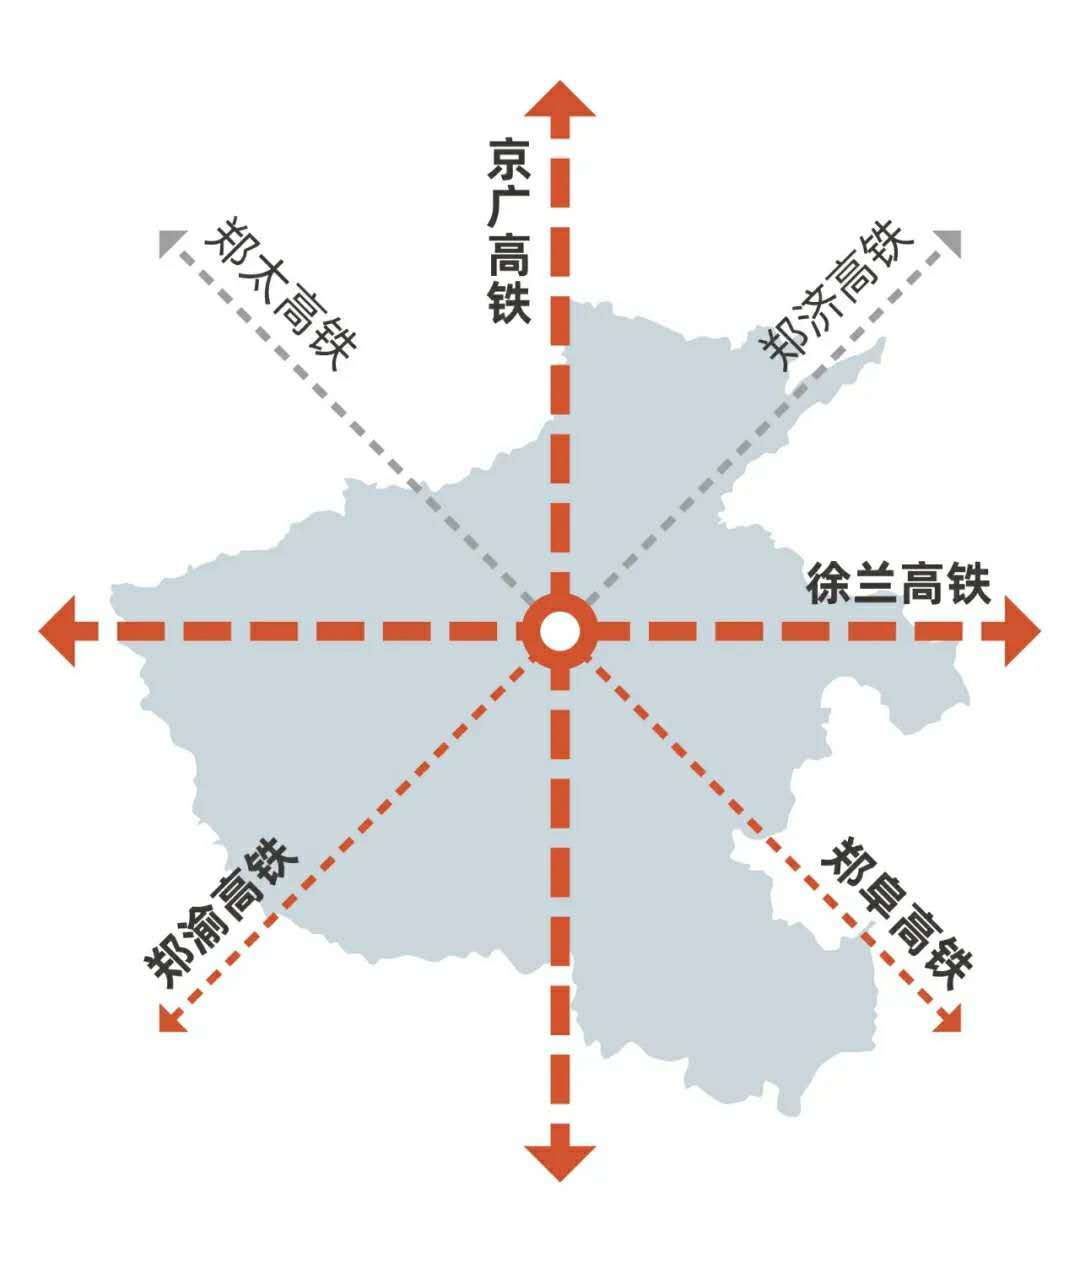 新郑机场至郑州南站城际铁路正式开始联调联试 